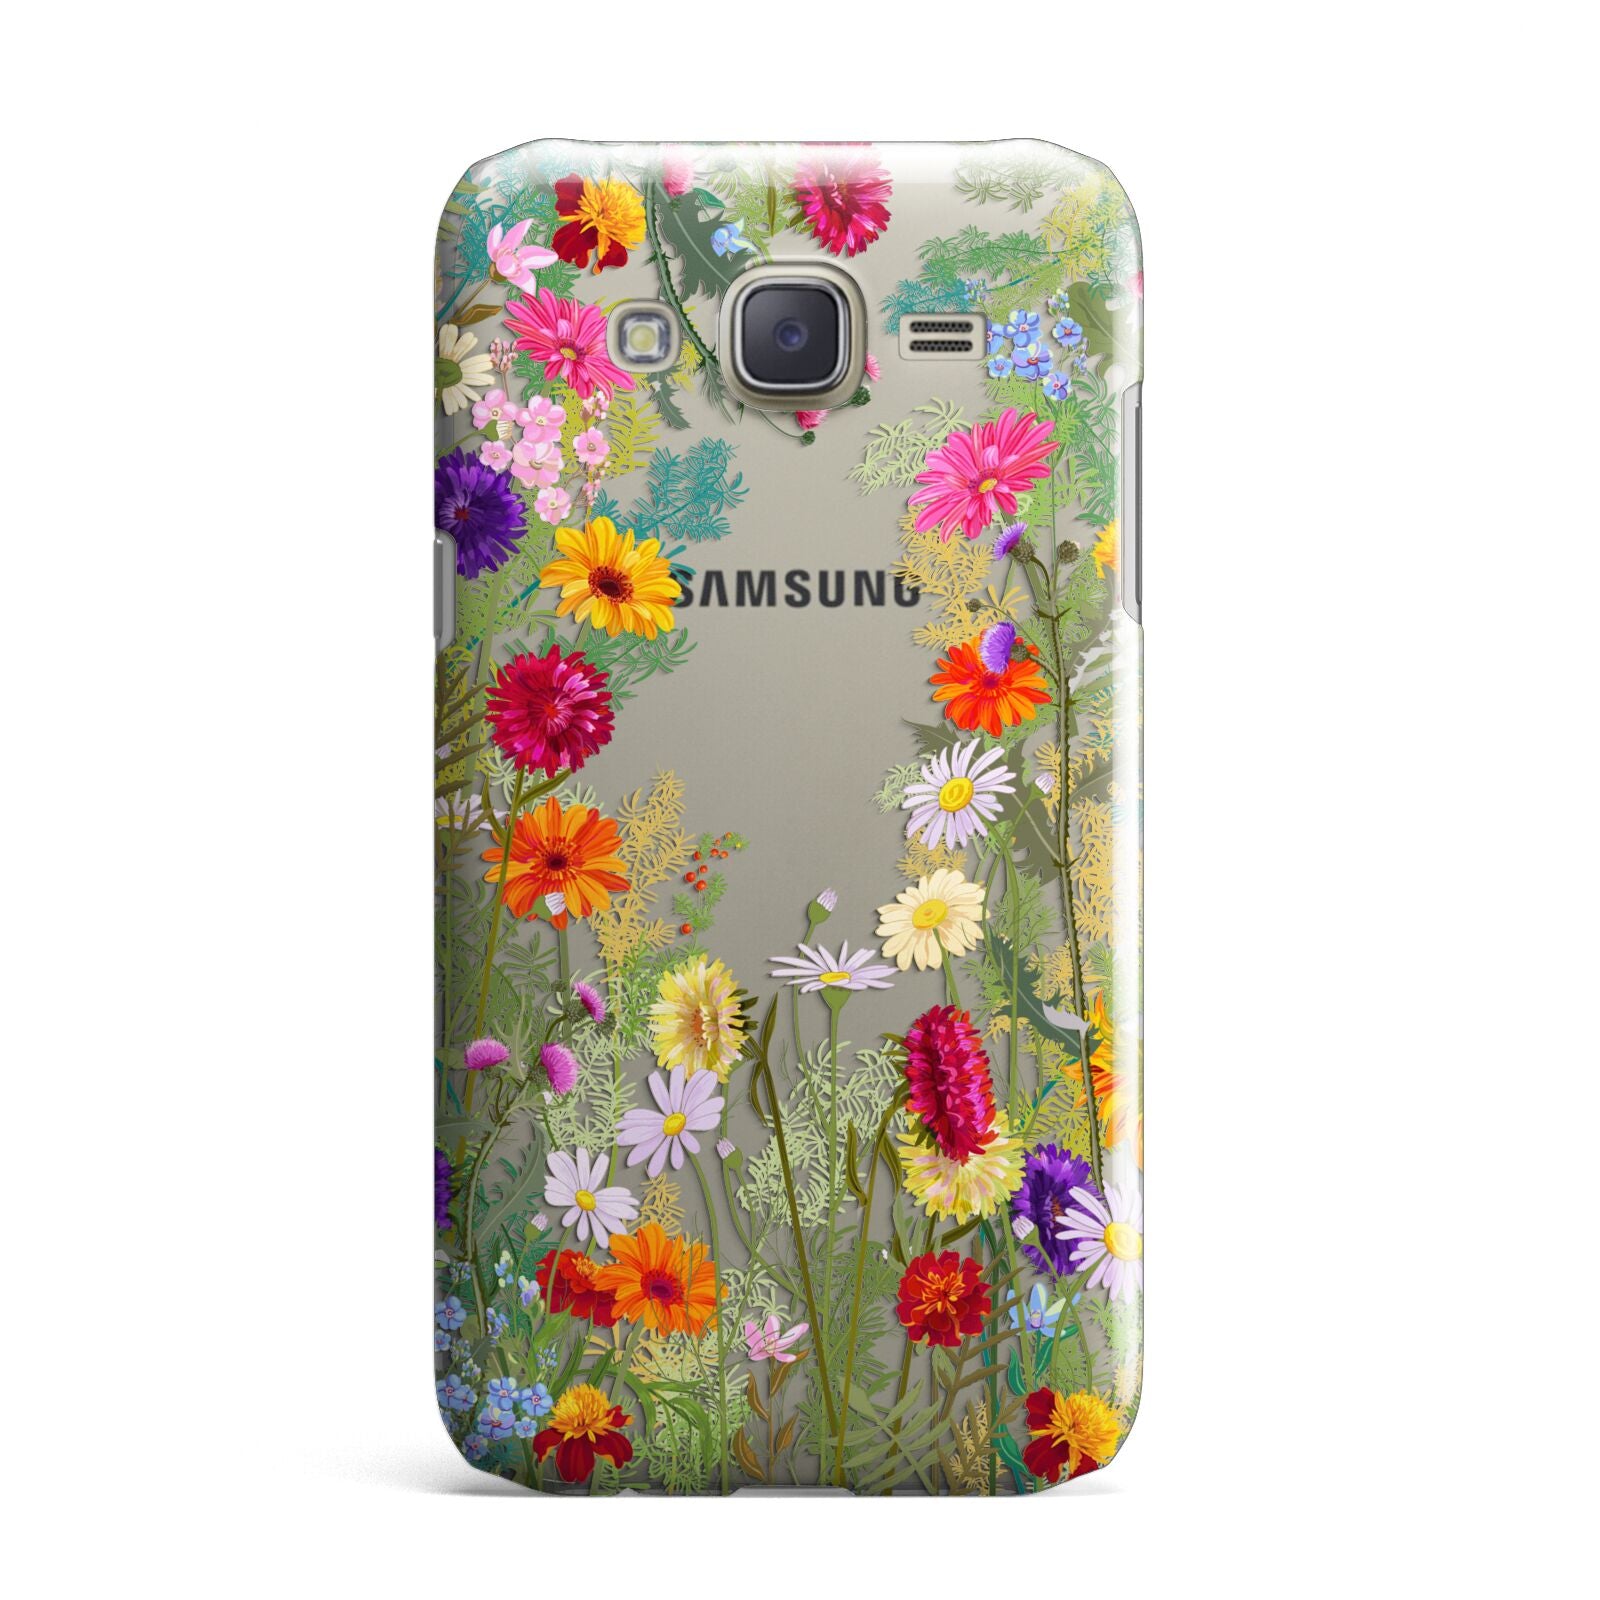 Wildflower Samsung Galaxy J7 Case